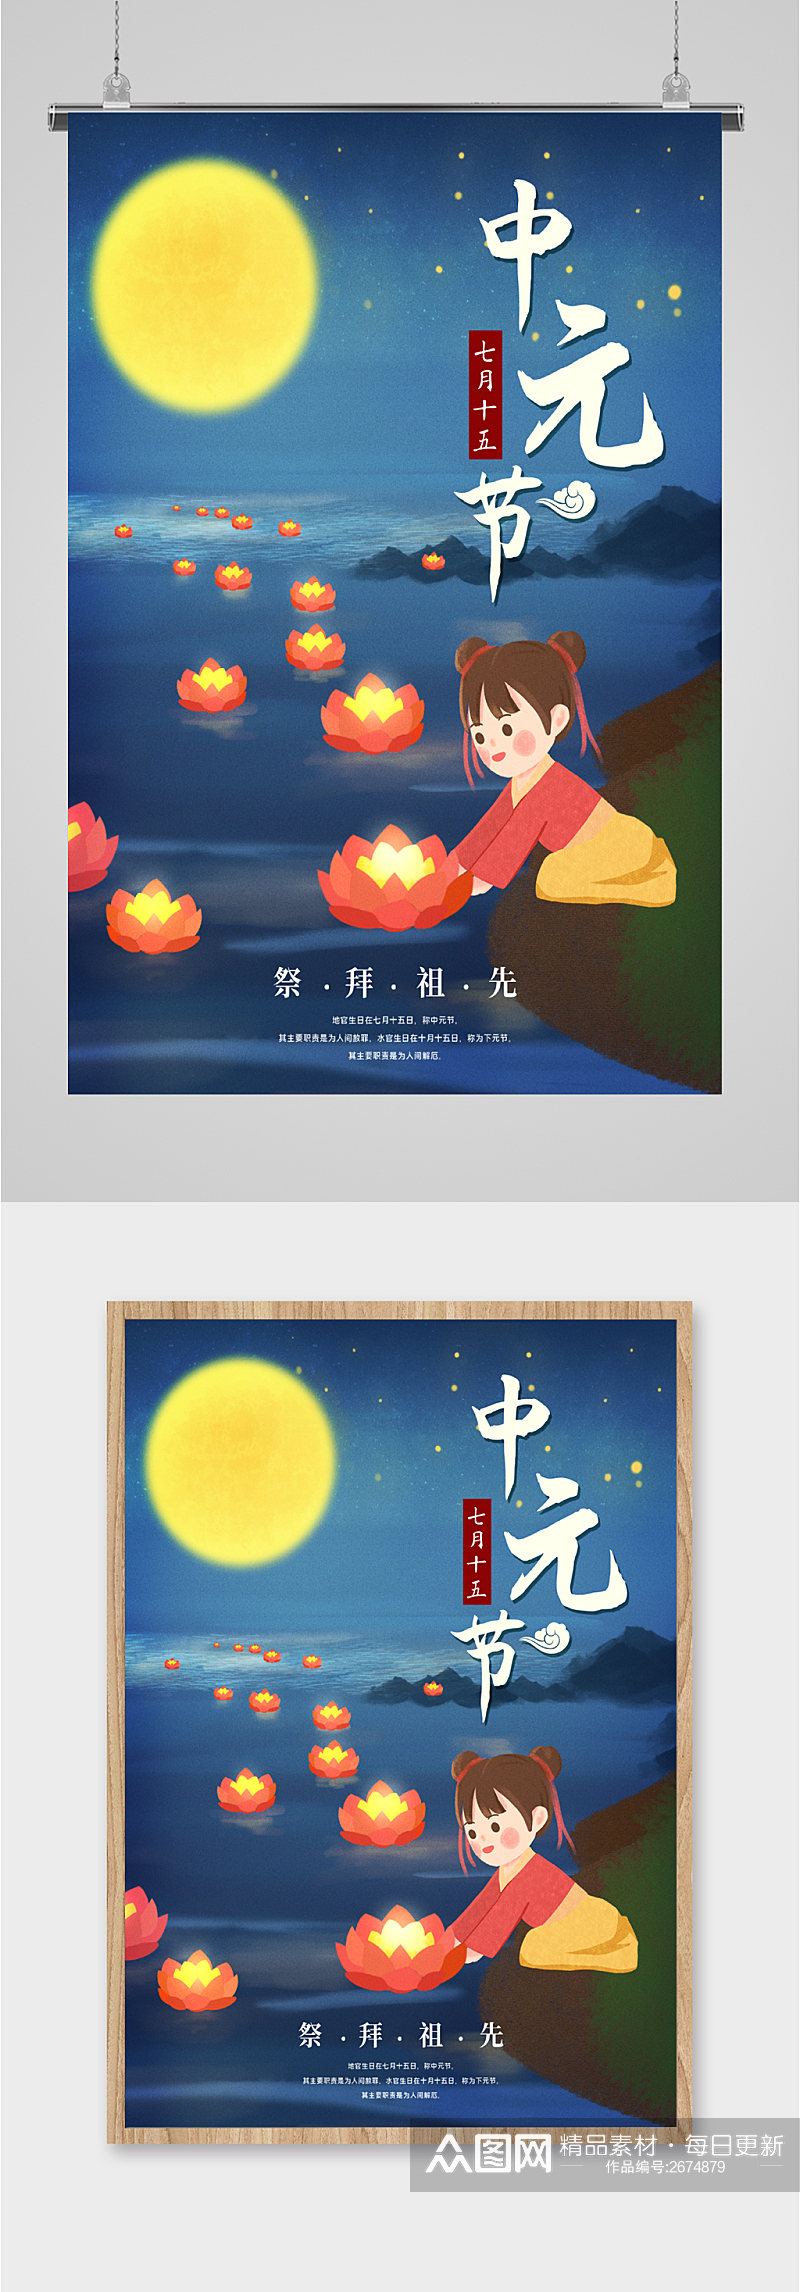 中元节创意卡通河灯插画海报素材